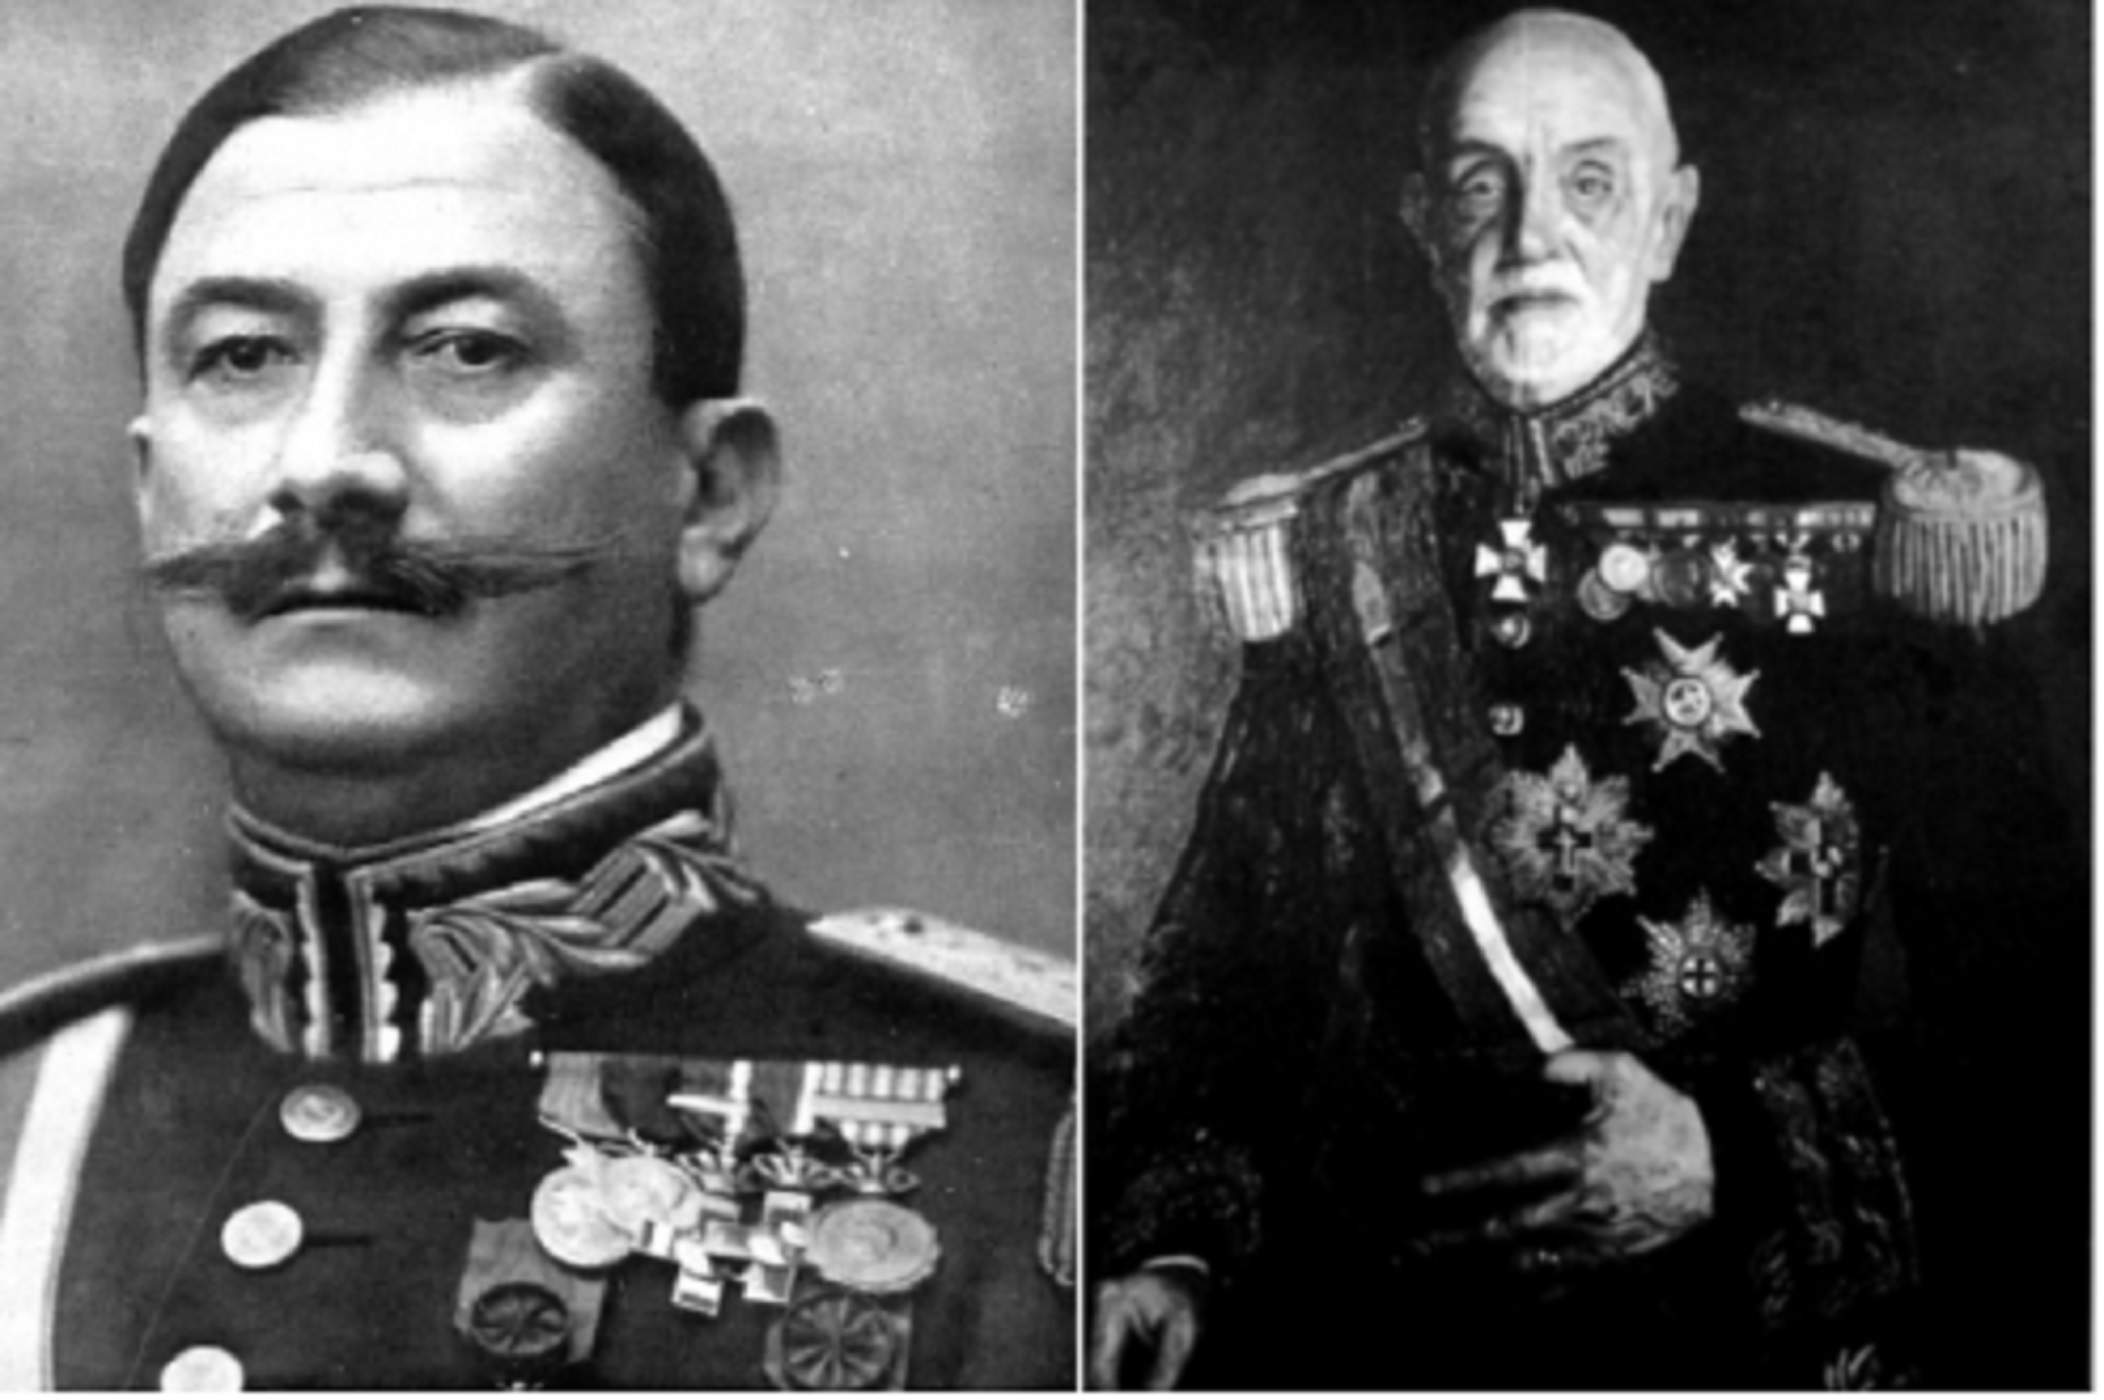 Els generals Berenguer i Despujol. Font Wikimedia Commons i My Heritage